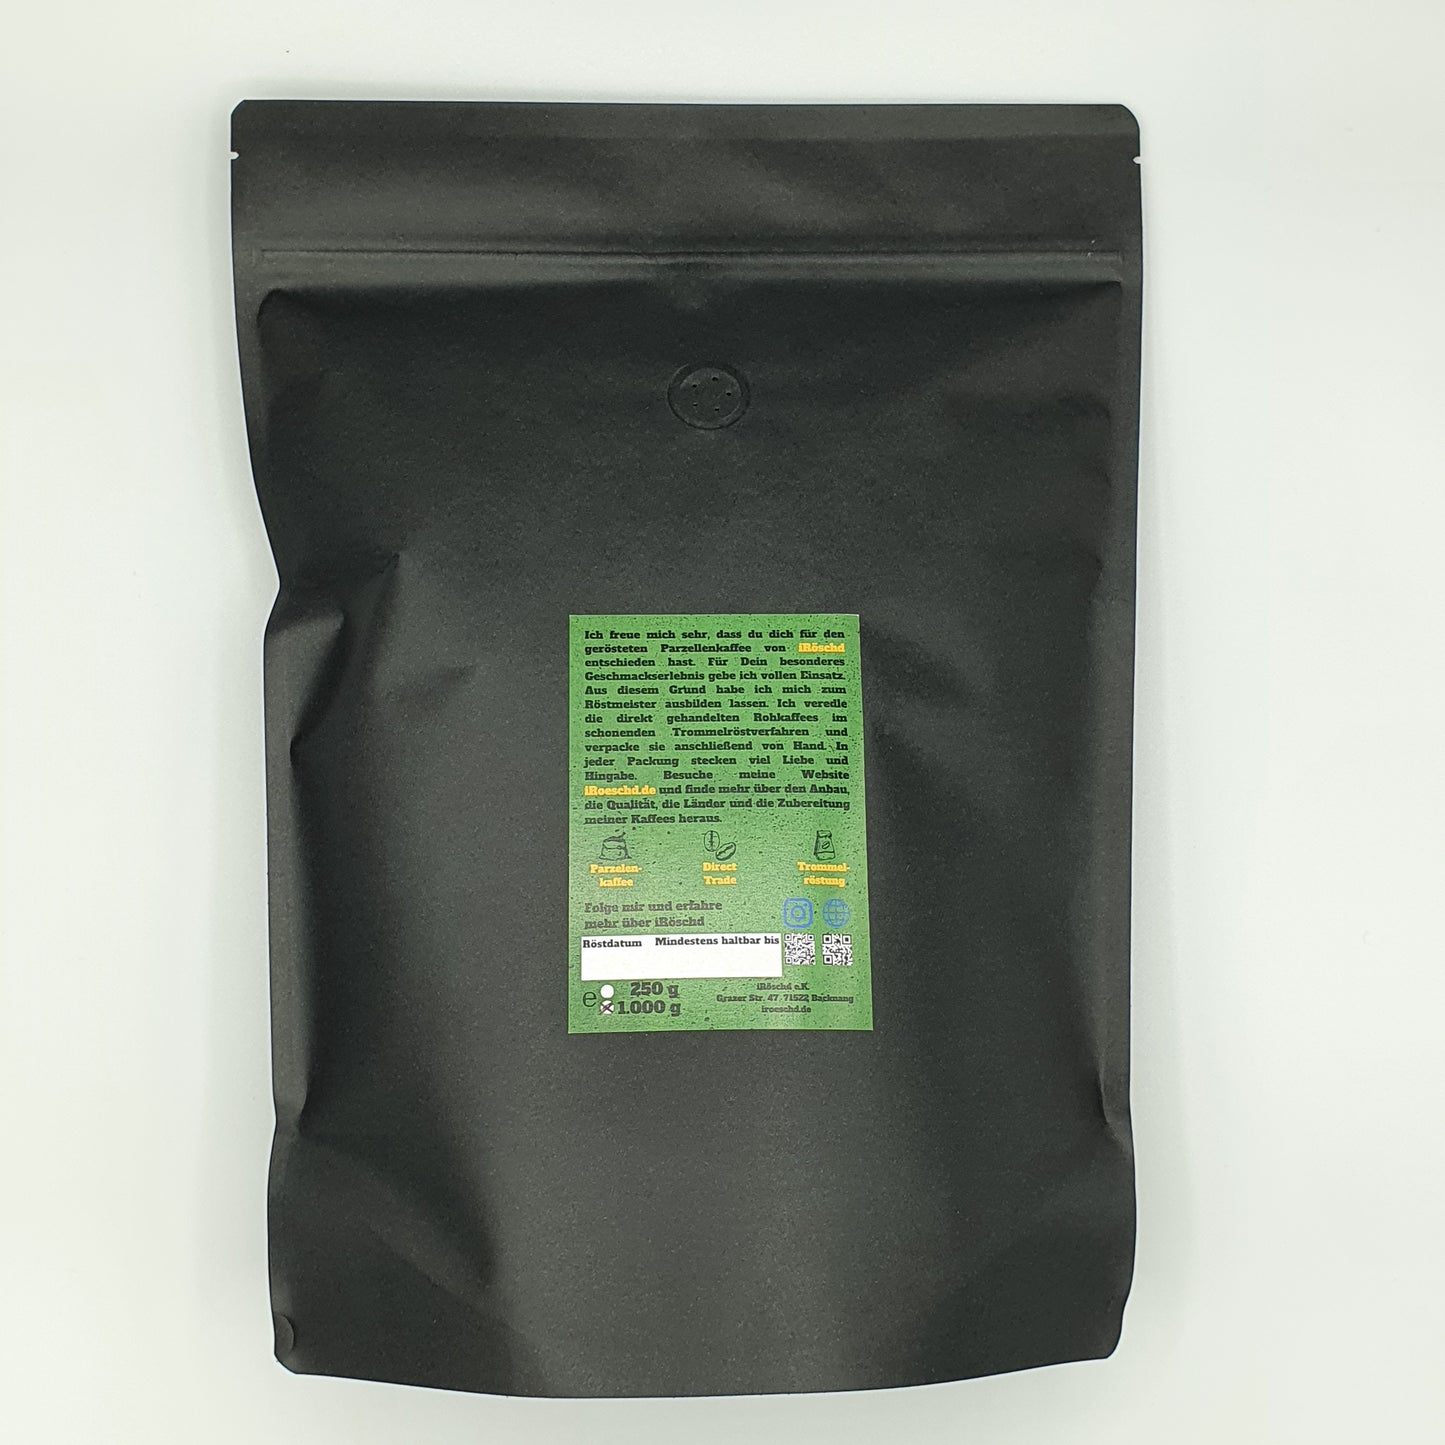 Zusehen ist ein Parzellenkaffee aus Brasilien als Filterkaffee geröstete und in der 1kg Pckung verpackt. Der Kaffee Stammt von den Brüdern Dutras der Farm Faziendas Dutras aus der Region Sitio Sao Jose.